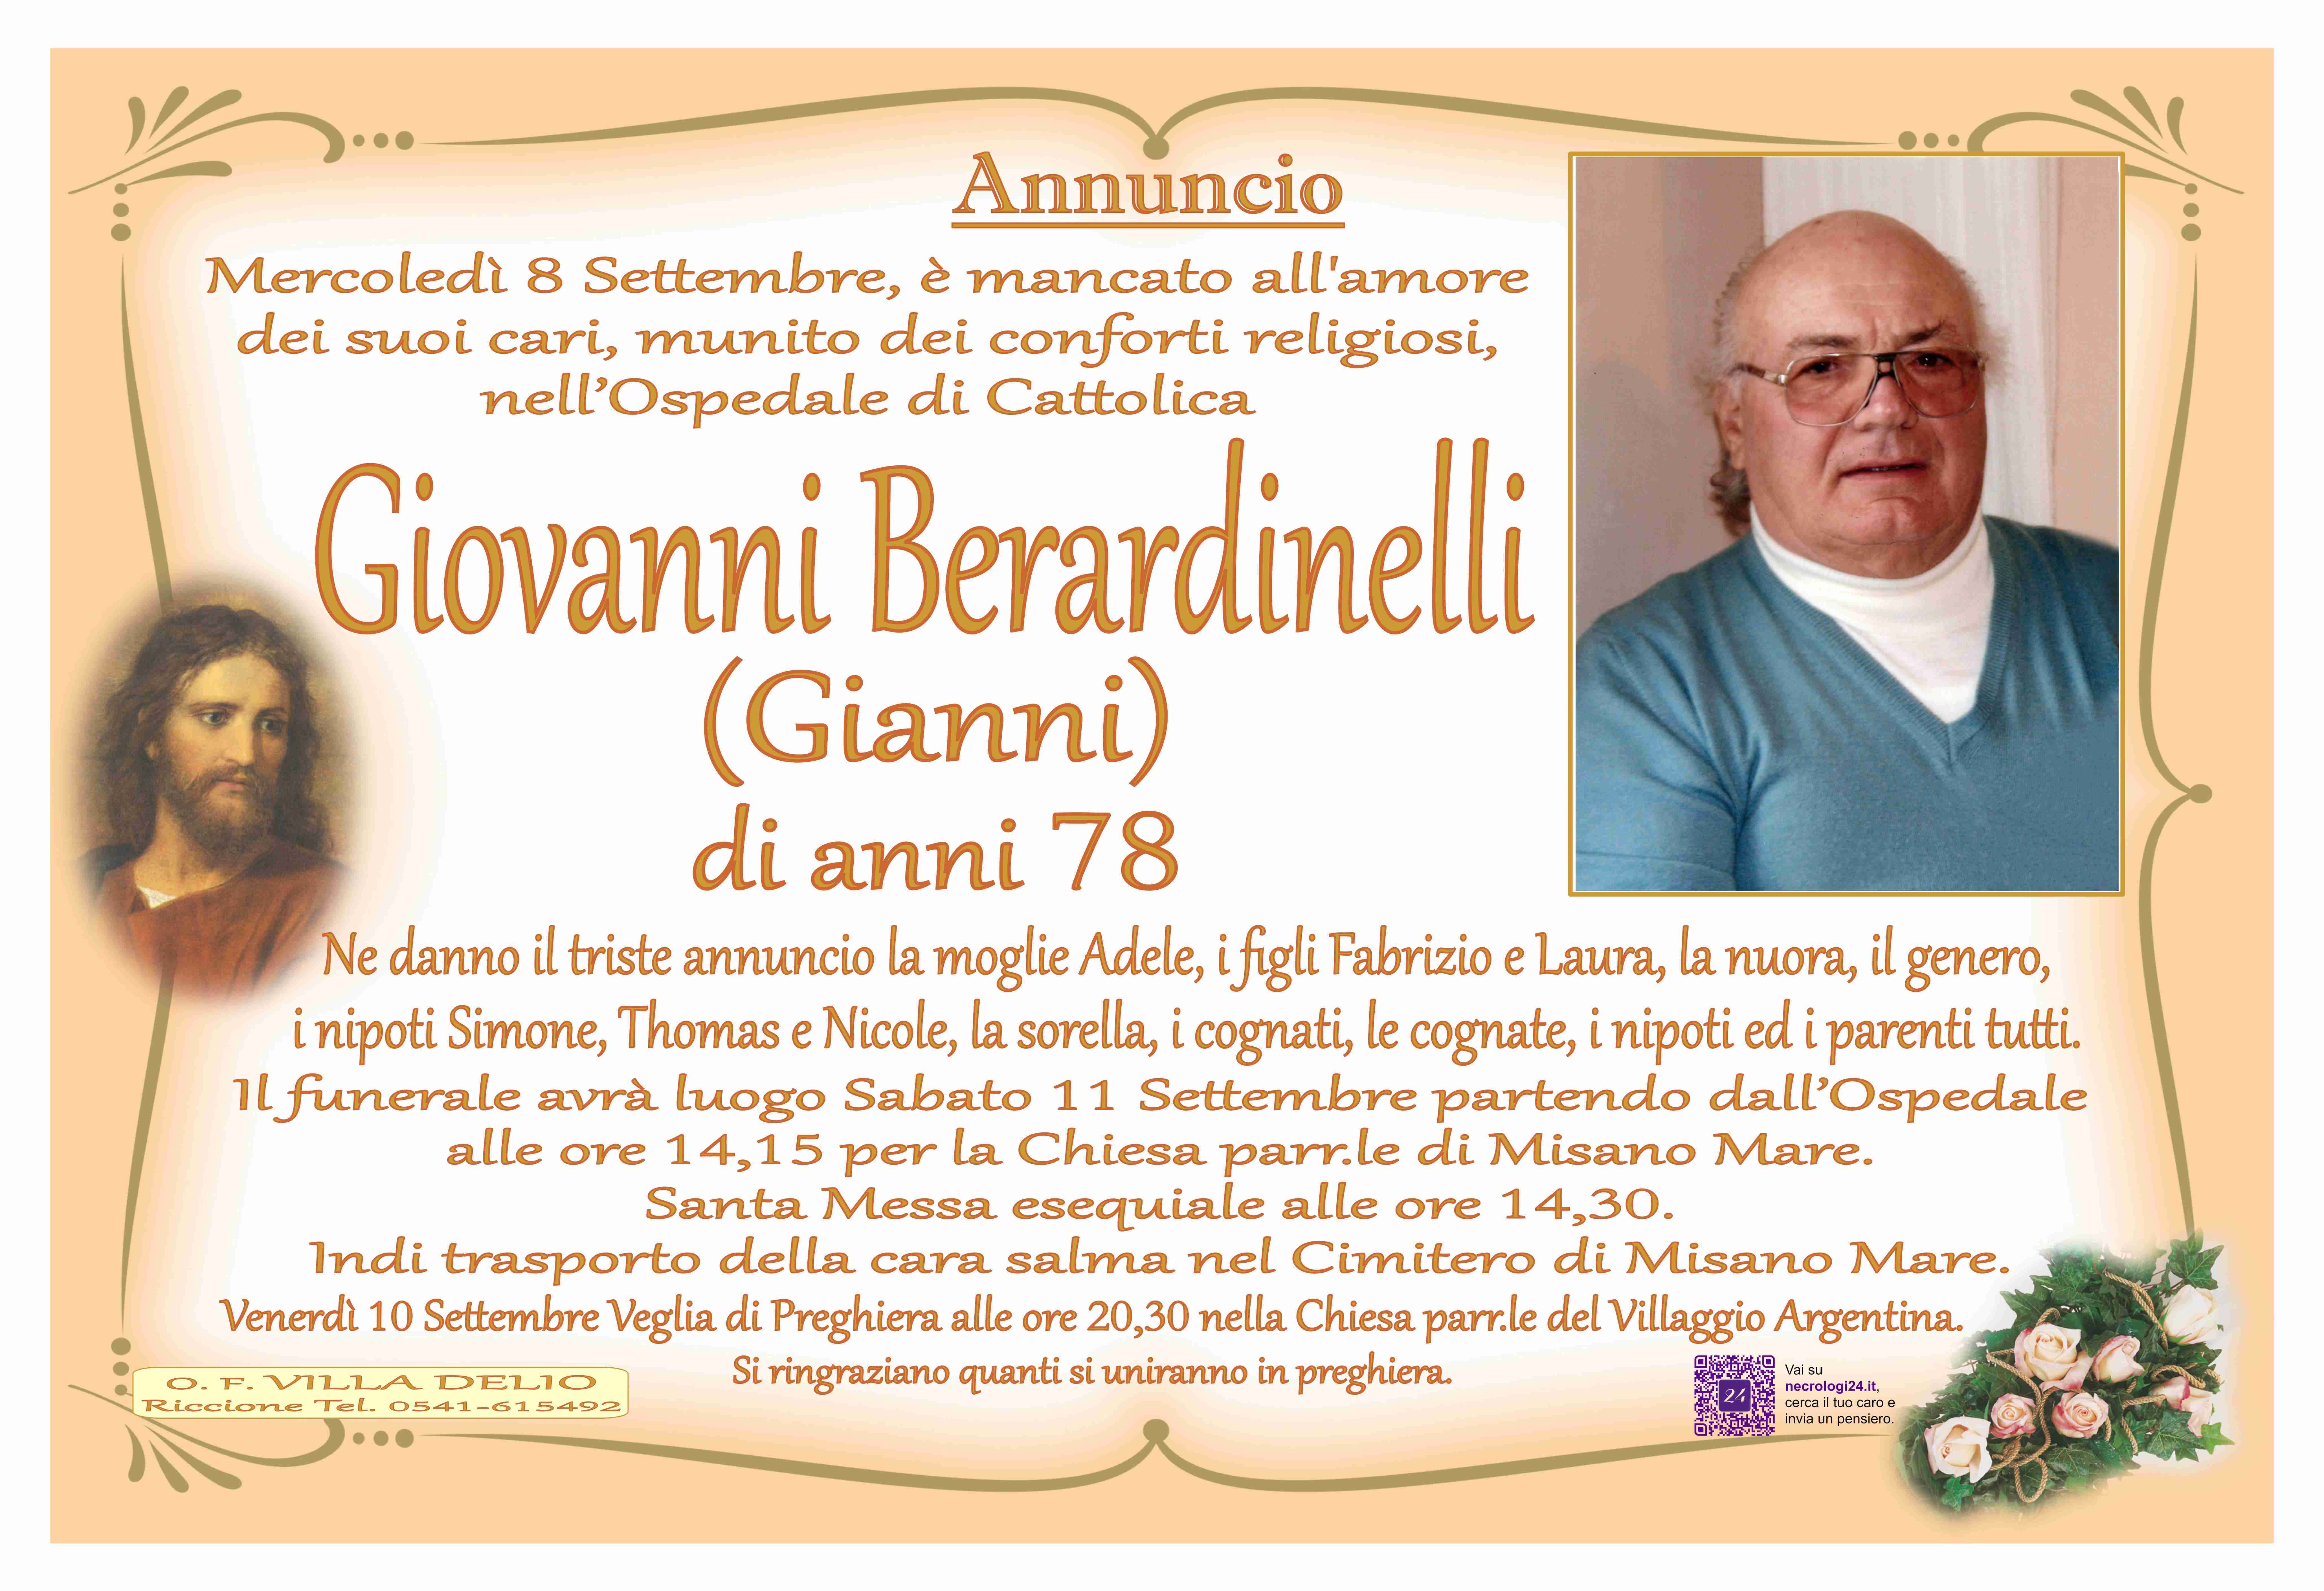 Giovanni Berardinelli